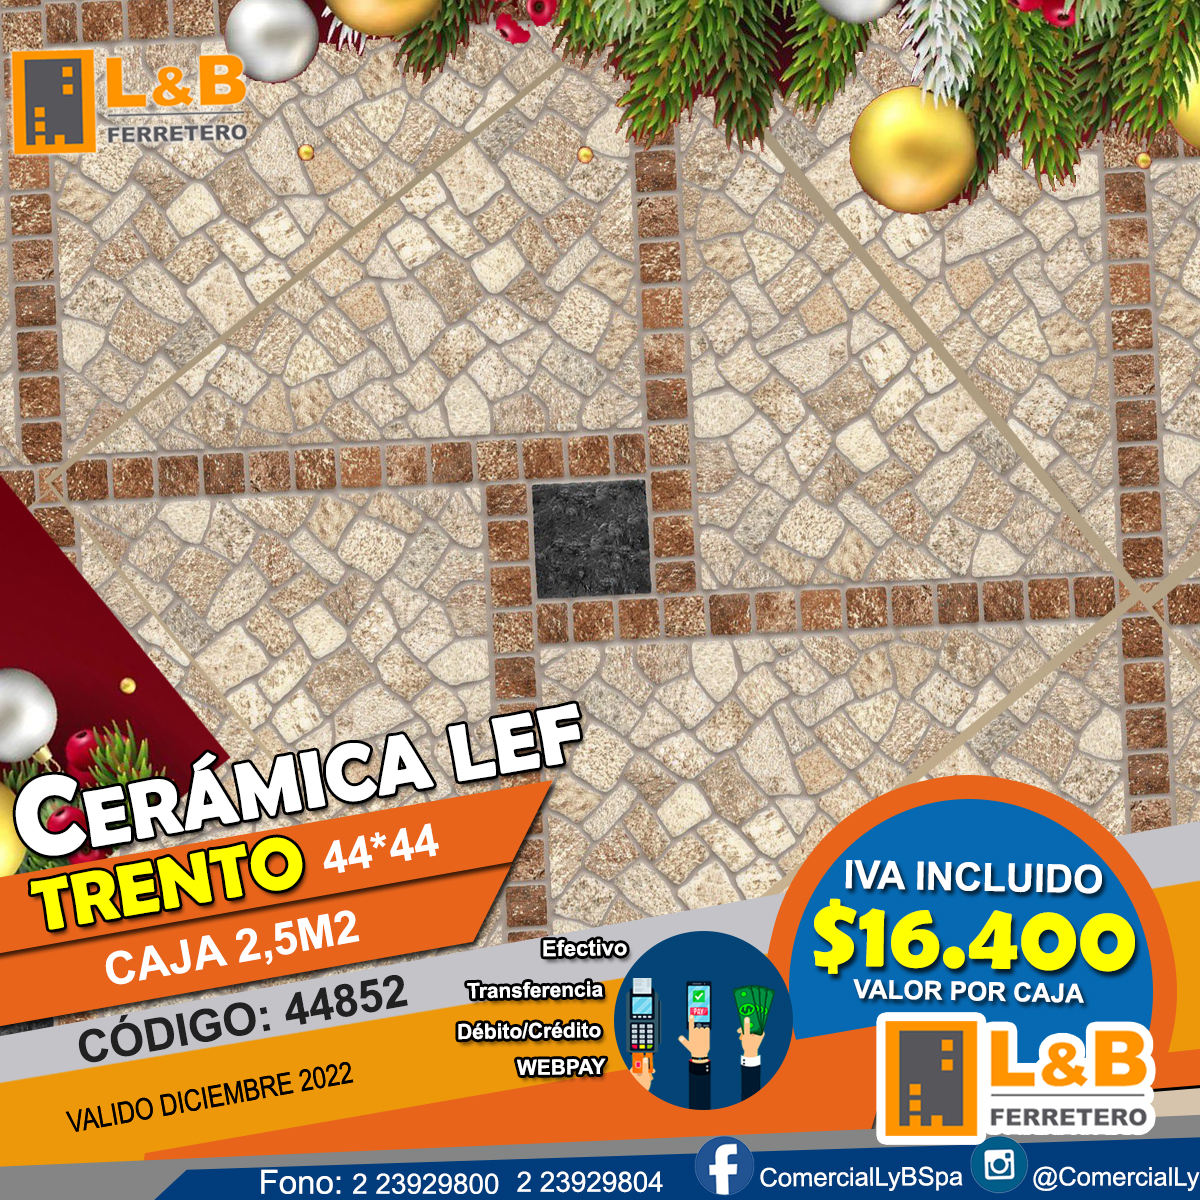 Ceramica LEF 44*44 GR44852 Trento caja de 2,5M2